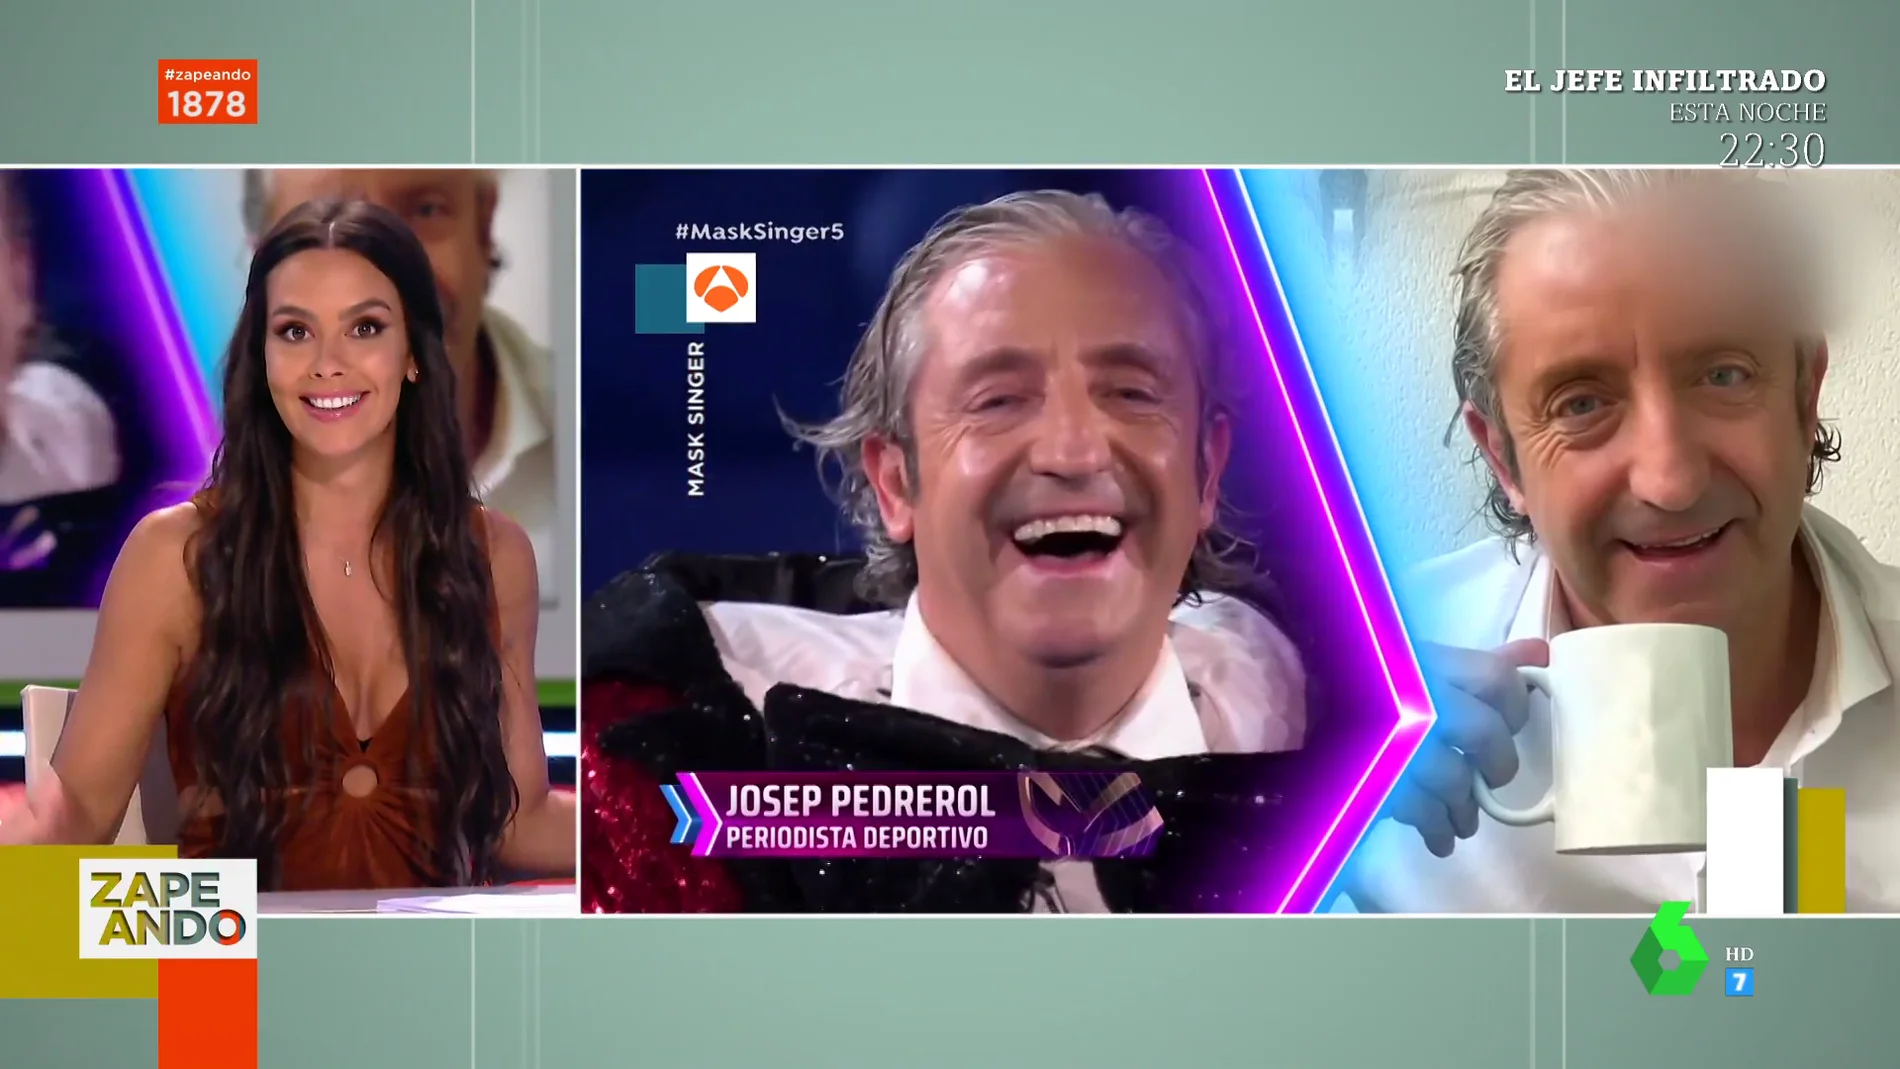 La reacción de Cristina Pedroche al descubrir a Josep Pedrerol disfrazado Rana en Mask Singer: "Me meo con él"